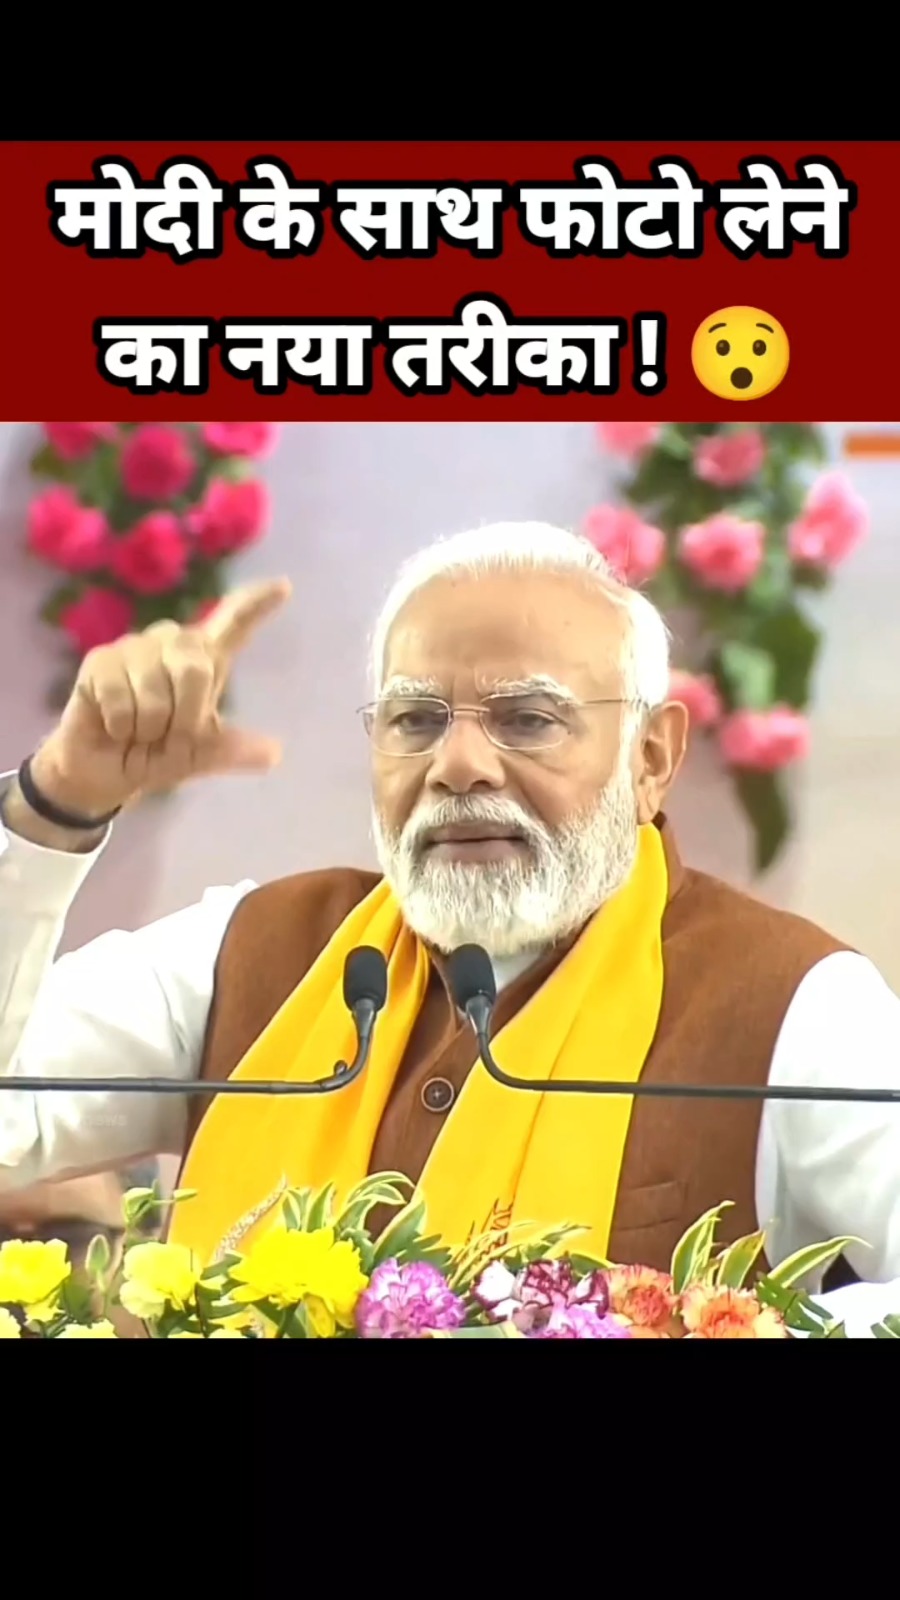 नरेंद्र मोदी के साथ फोटो लेने का नया तरीका 😯 PM Narendra Modi Speech